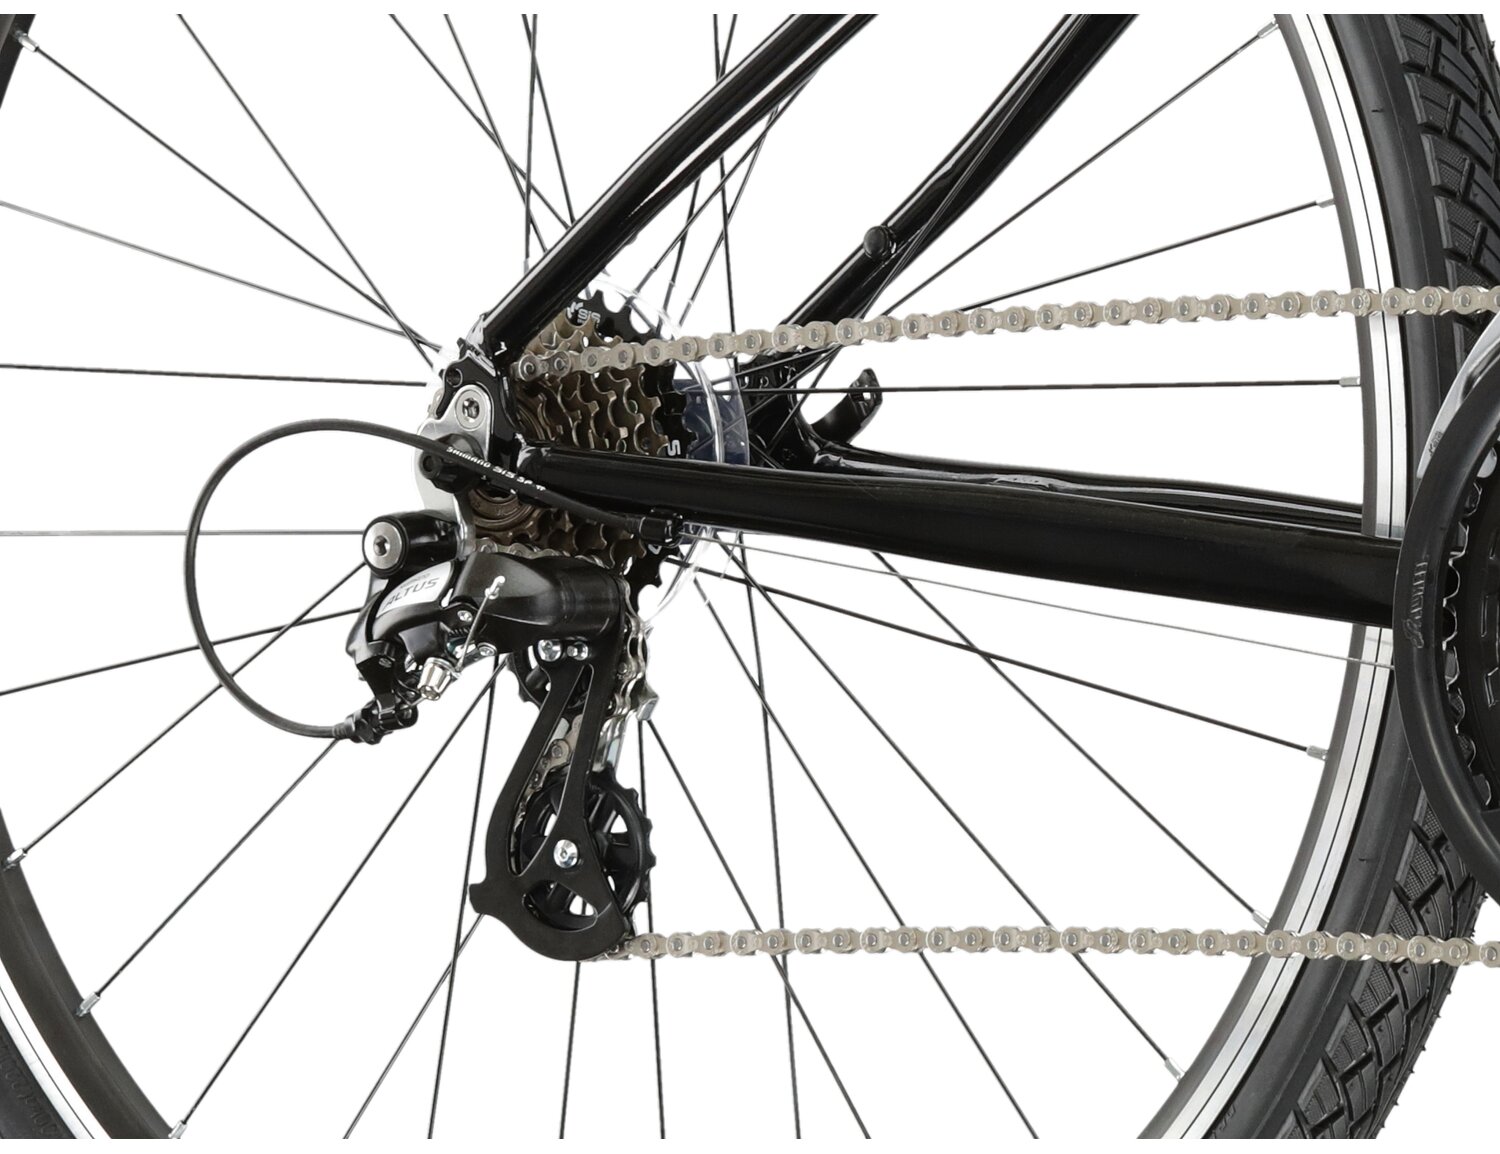  Tylna siedmiobiegowa przerzutka Shimano Altus M310 oraz hamulce v-brake w rowerze crossowym damskim KROSS Evado 2.0 